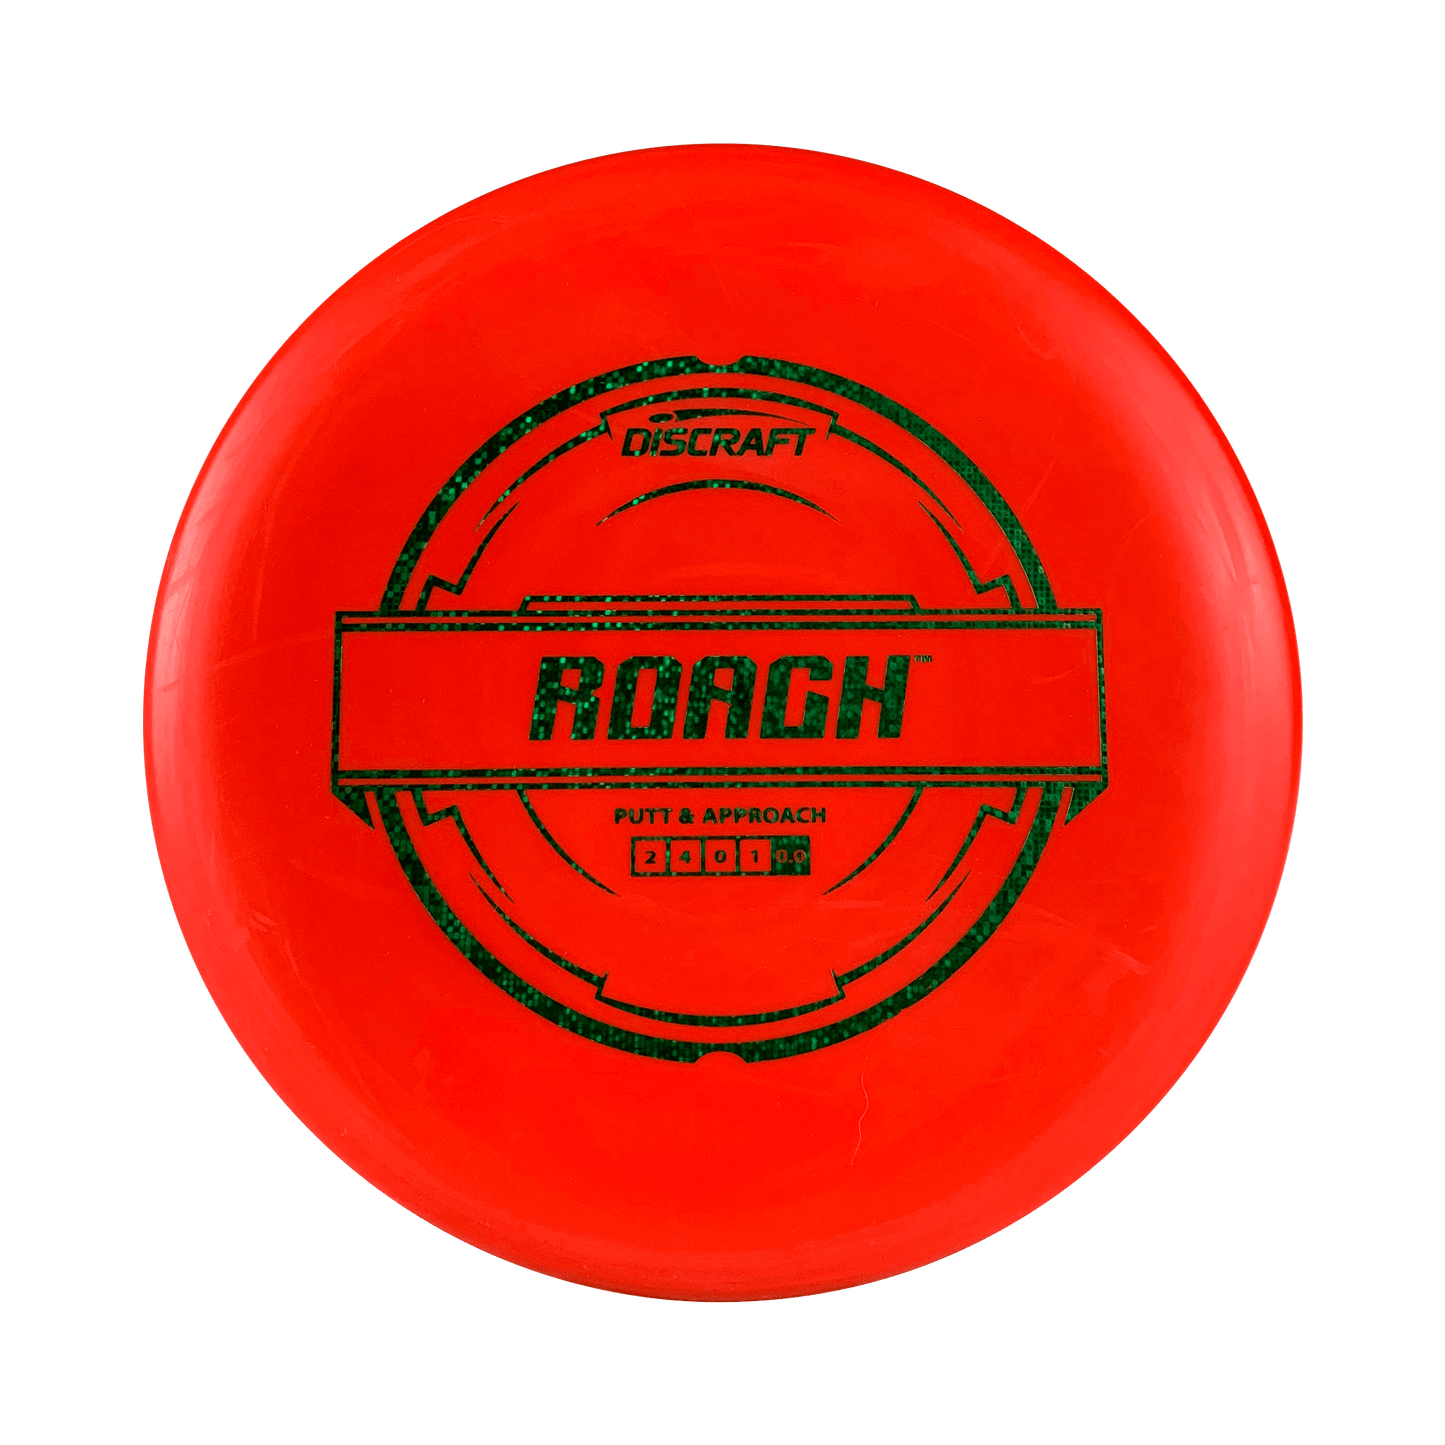 Pro D Roach Disc Discraft red 173 